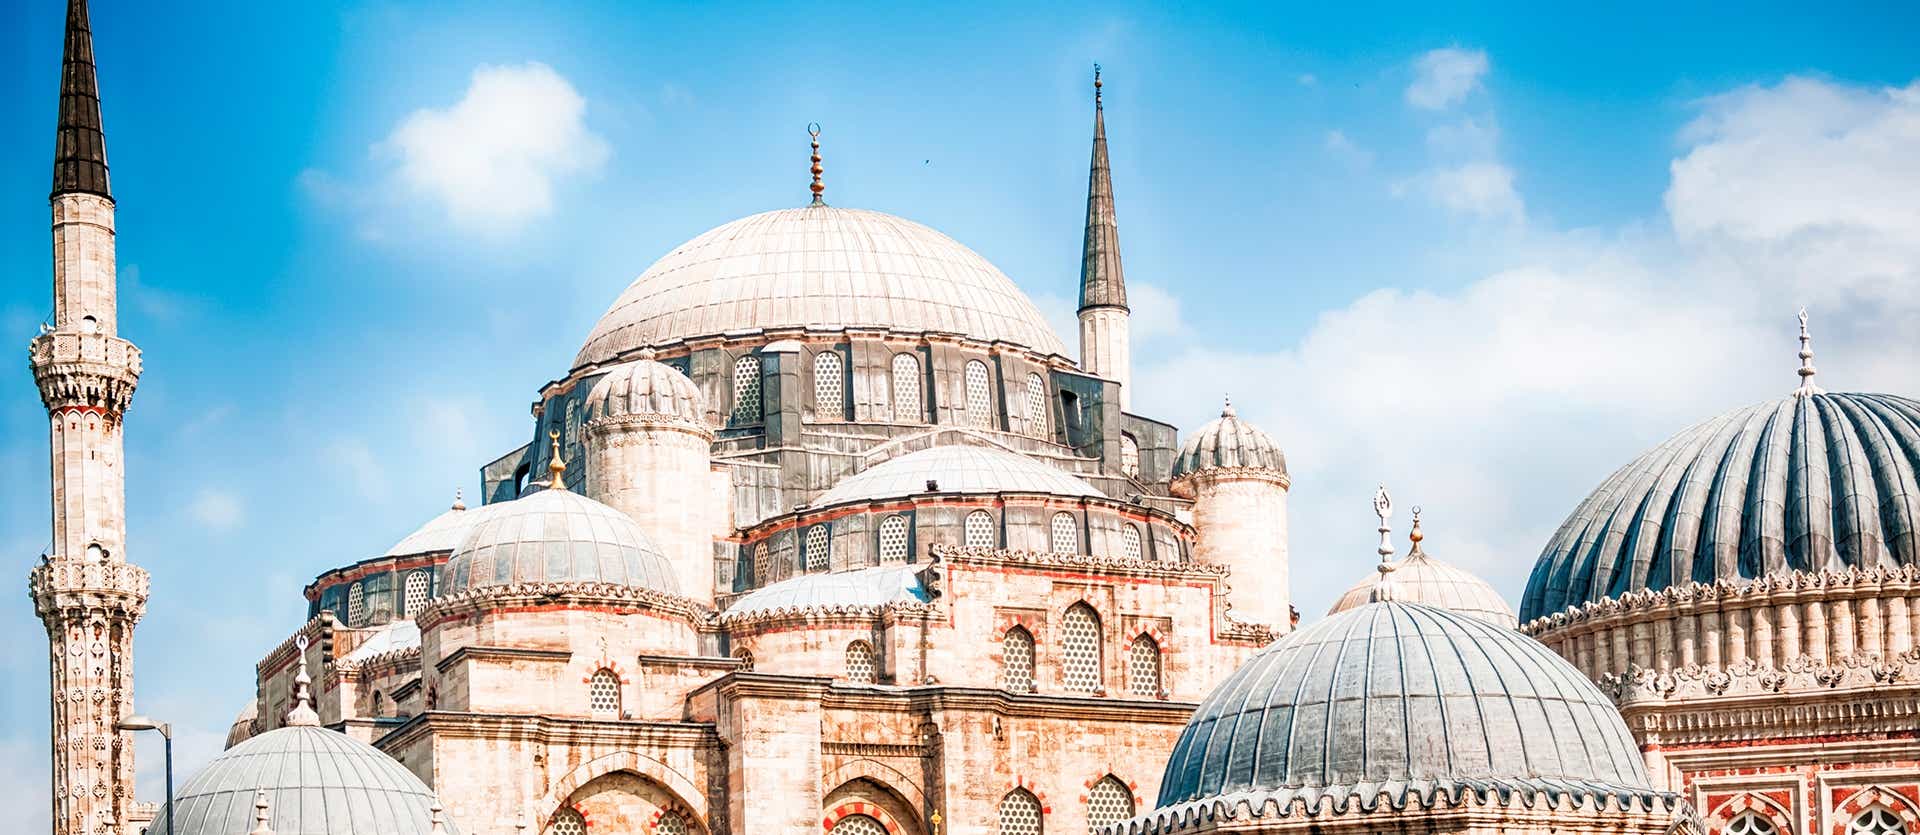 Blue Mosque <span class="iconos separador"></span> Istanbul <span class="iconos separador"></span> Turkey